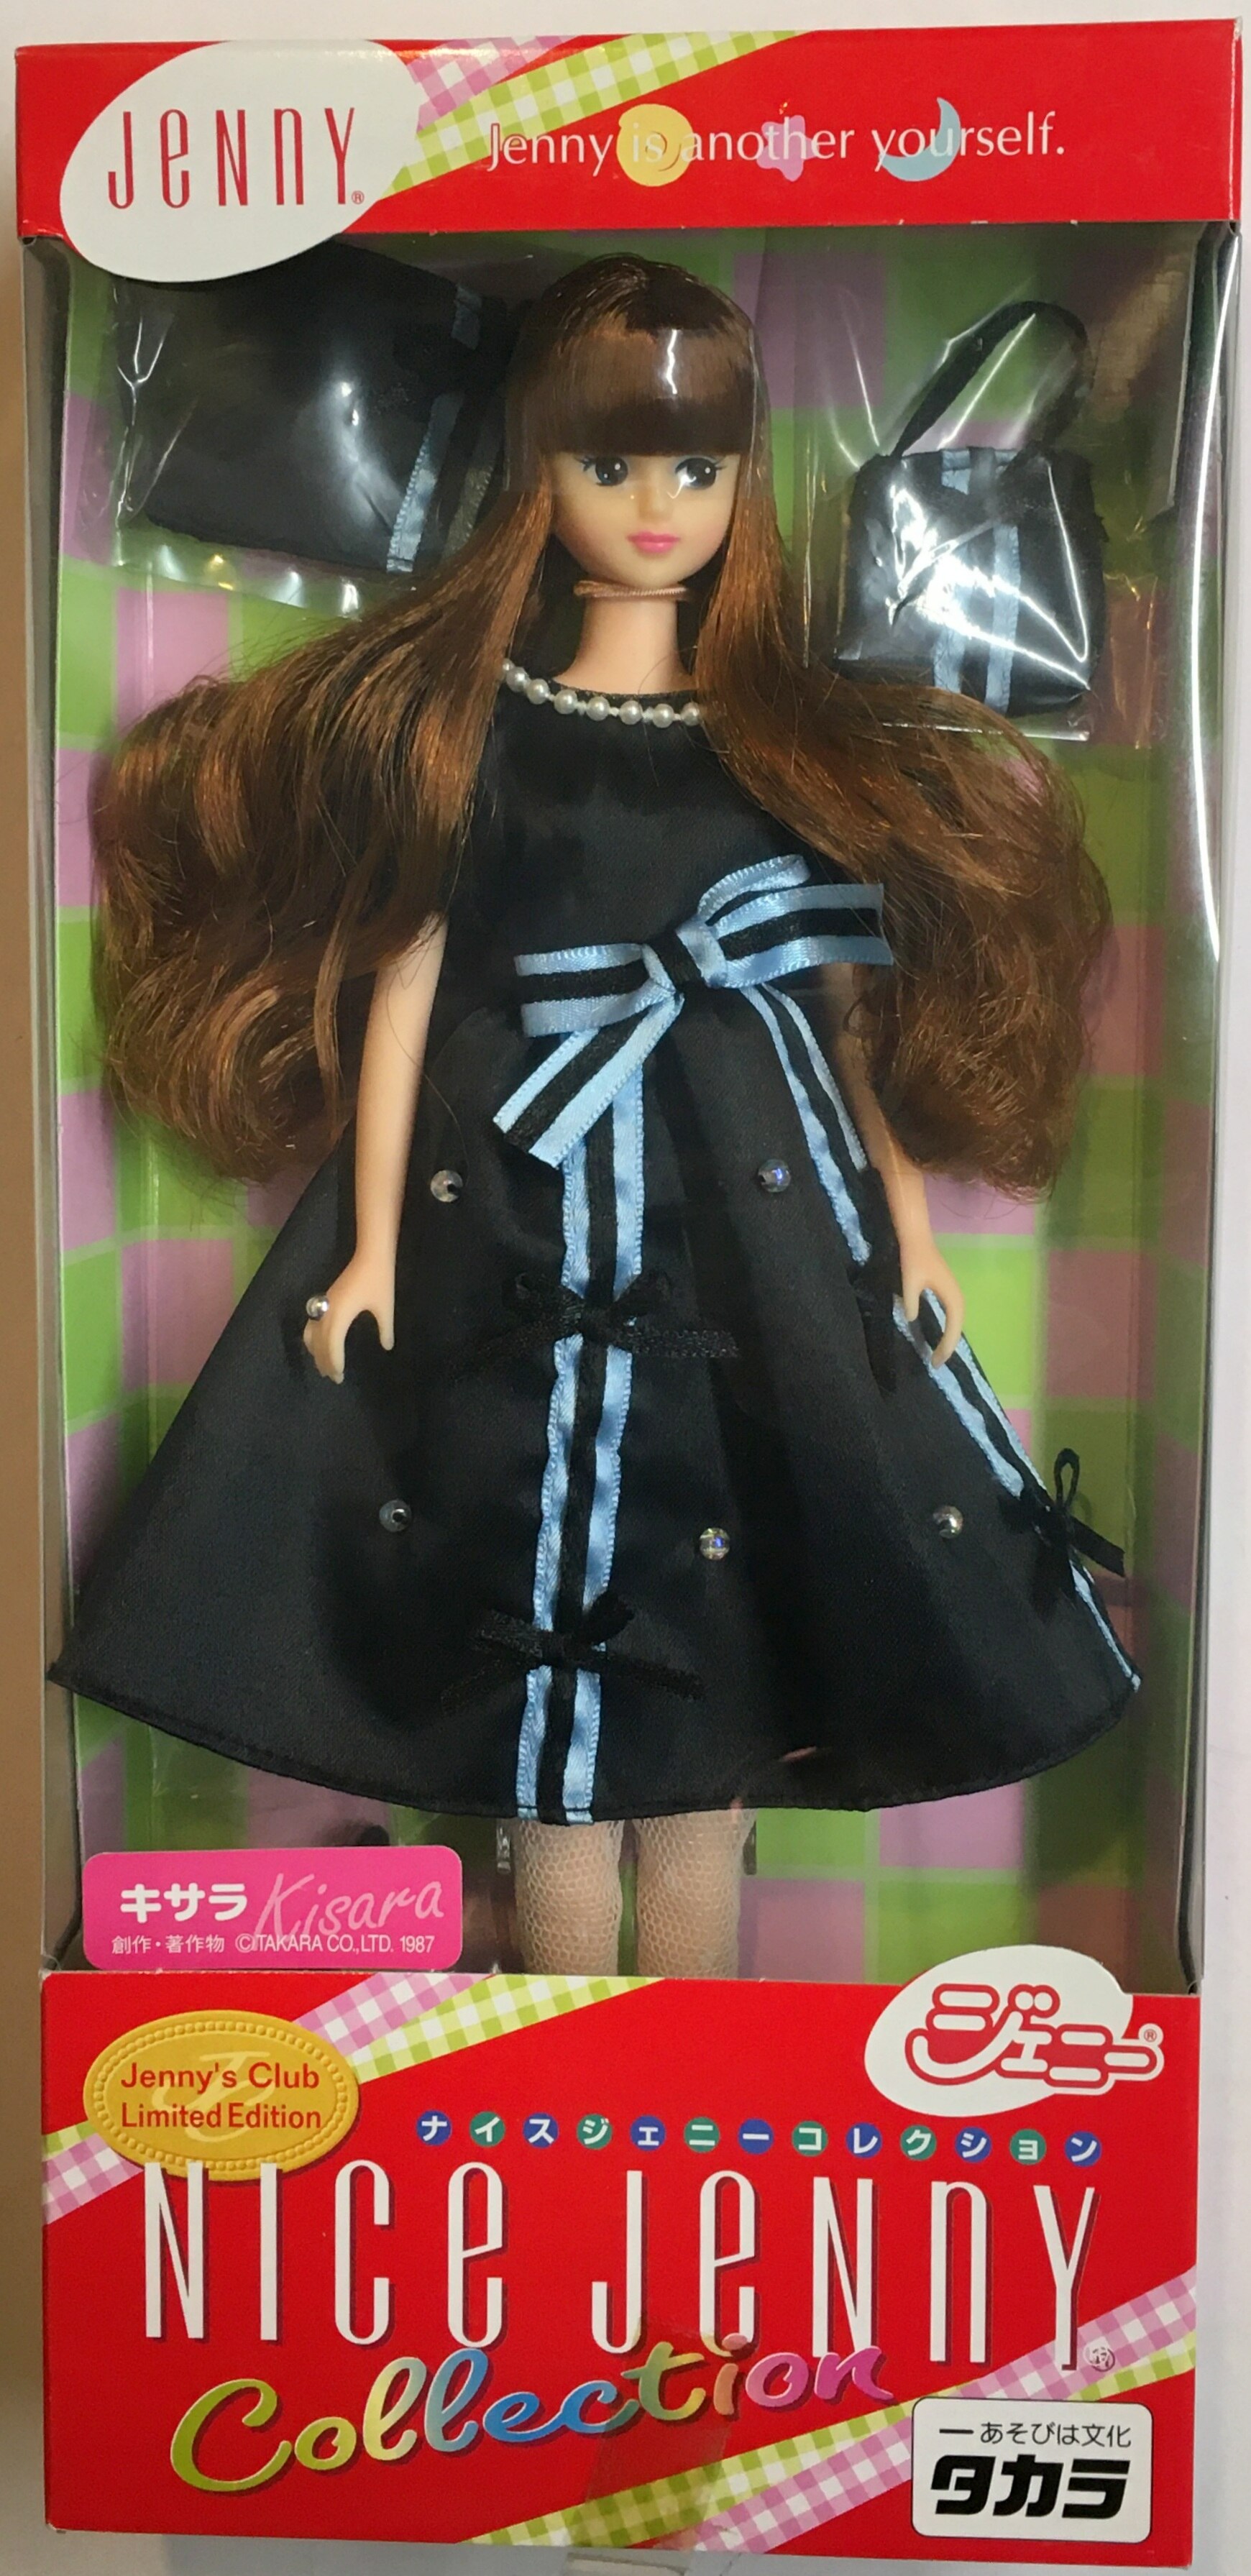 【購入安心】新品未開封 ナイスジェニー会員限定 オリジナル マリーン ジェニー 人形